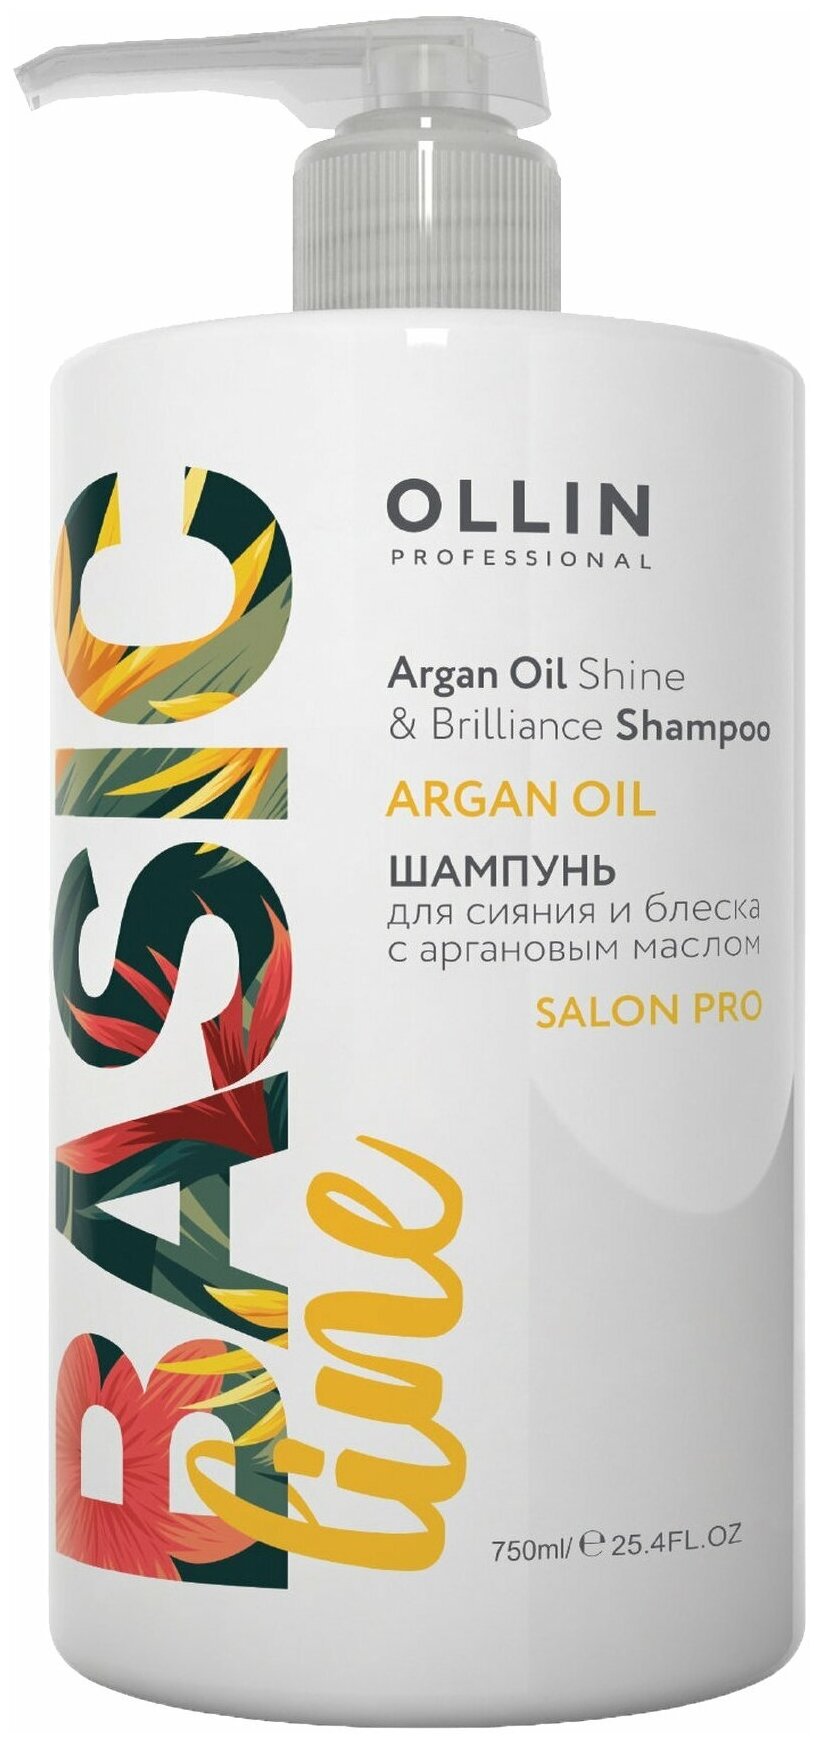 OLLIN Professional Шампунь для волос Basic Line Argana Oil для сияния и блеска с аргановым маслом, 750 мл